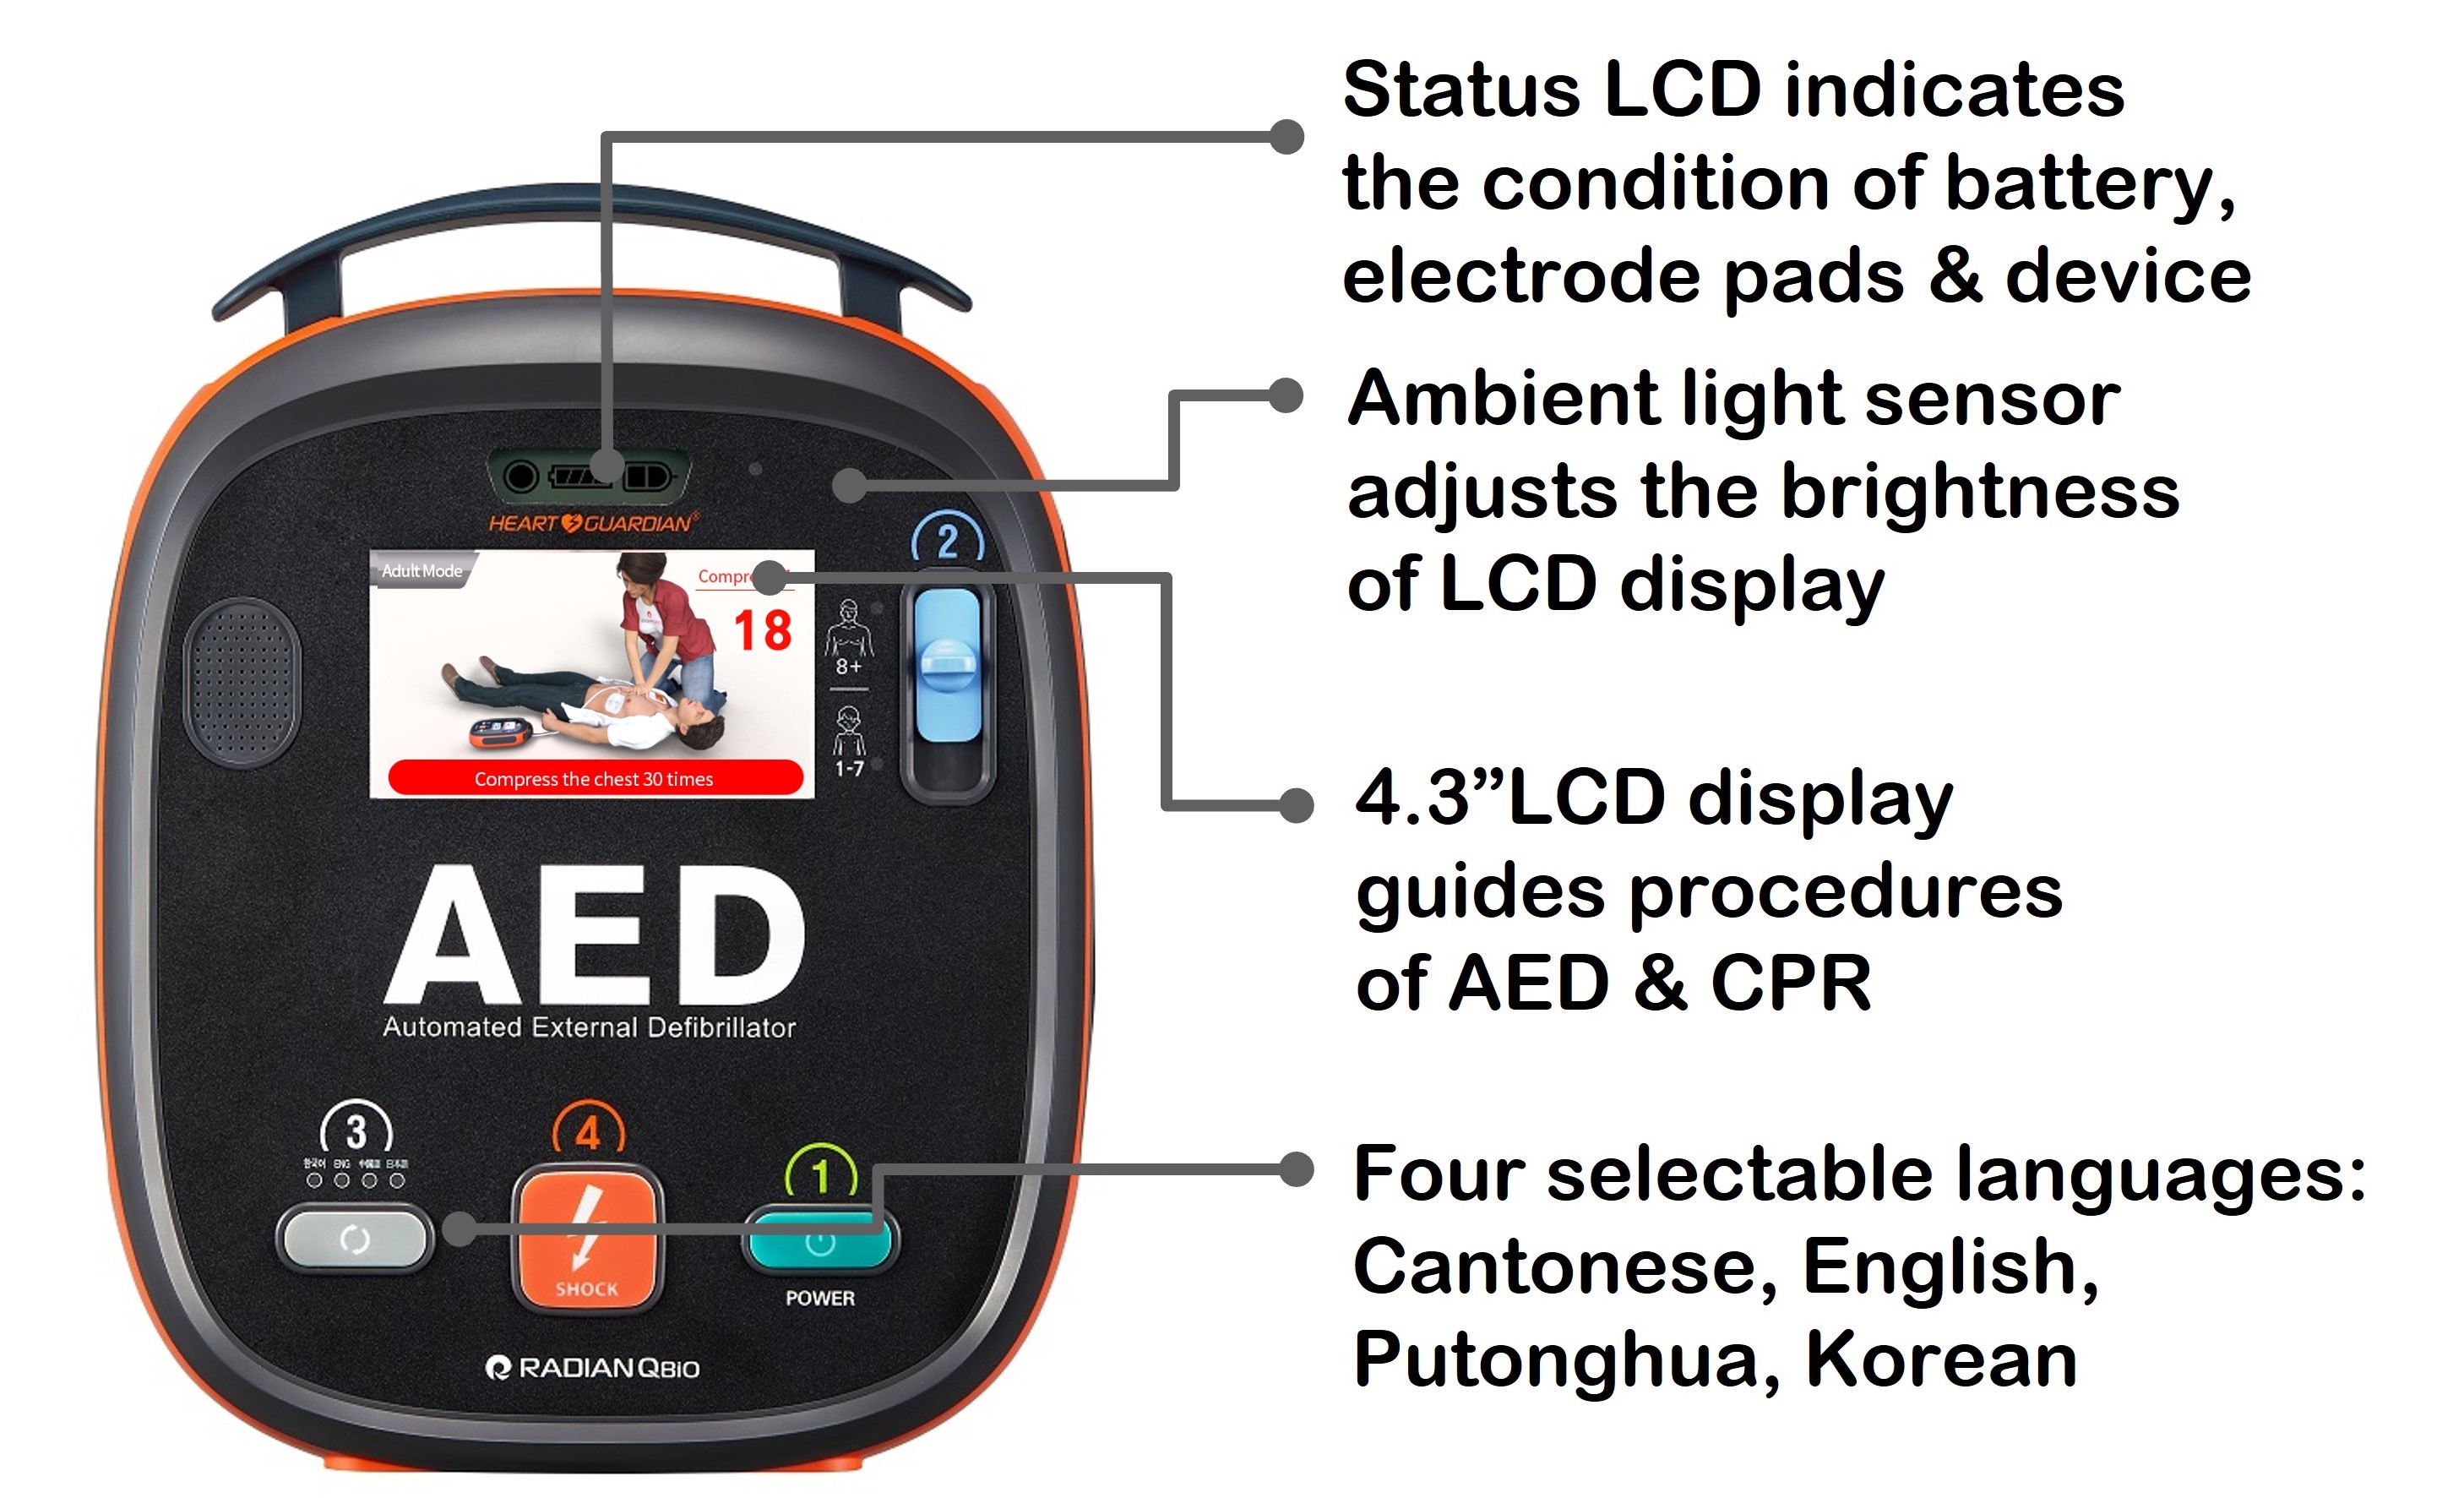 AED HR-701Plus